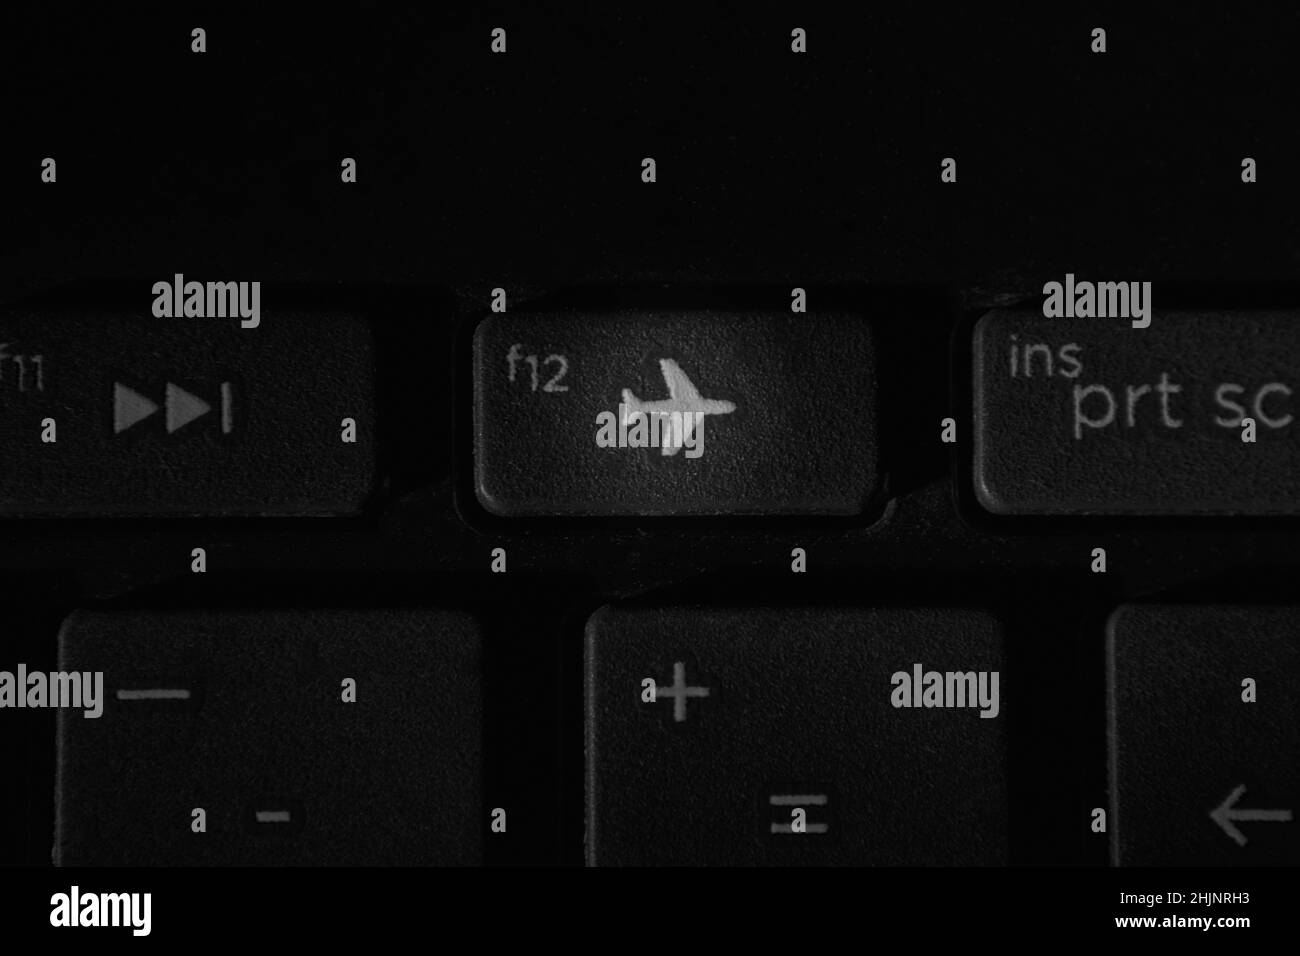 airplane mode keyboard shortcut windows 10